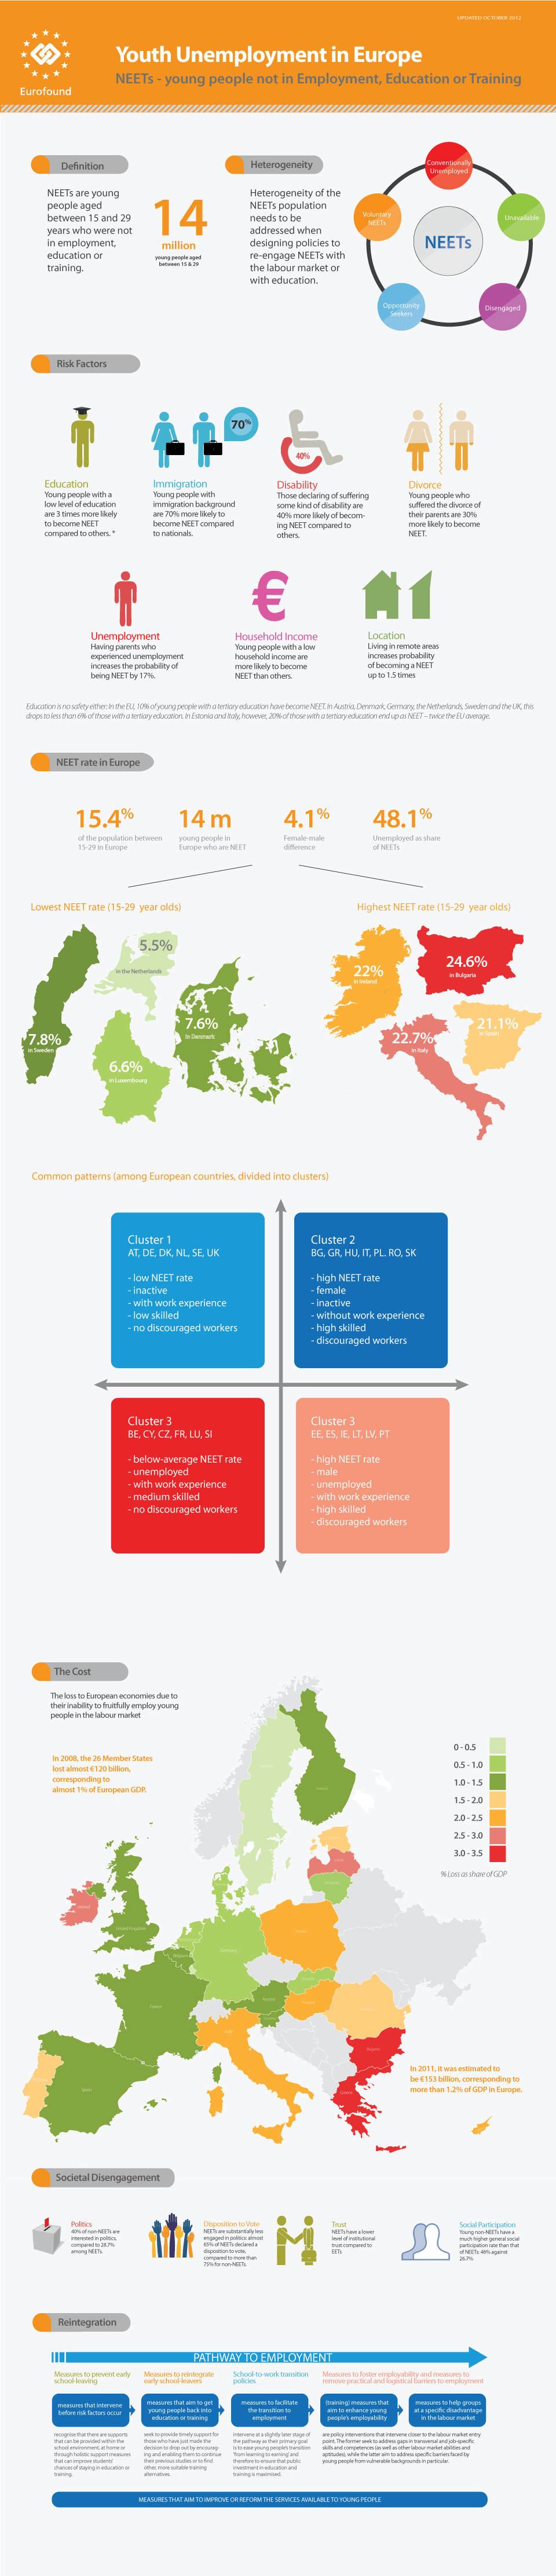 NEET en Europe - Infographie